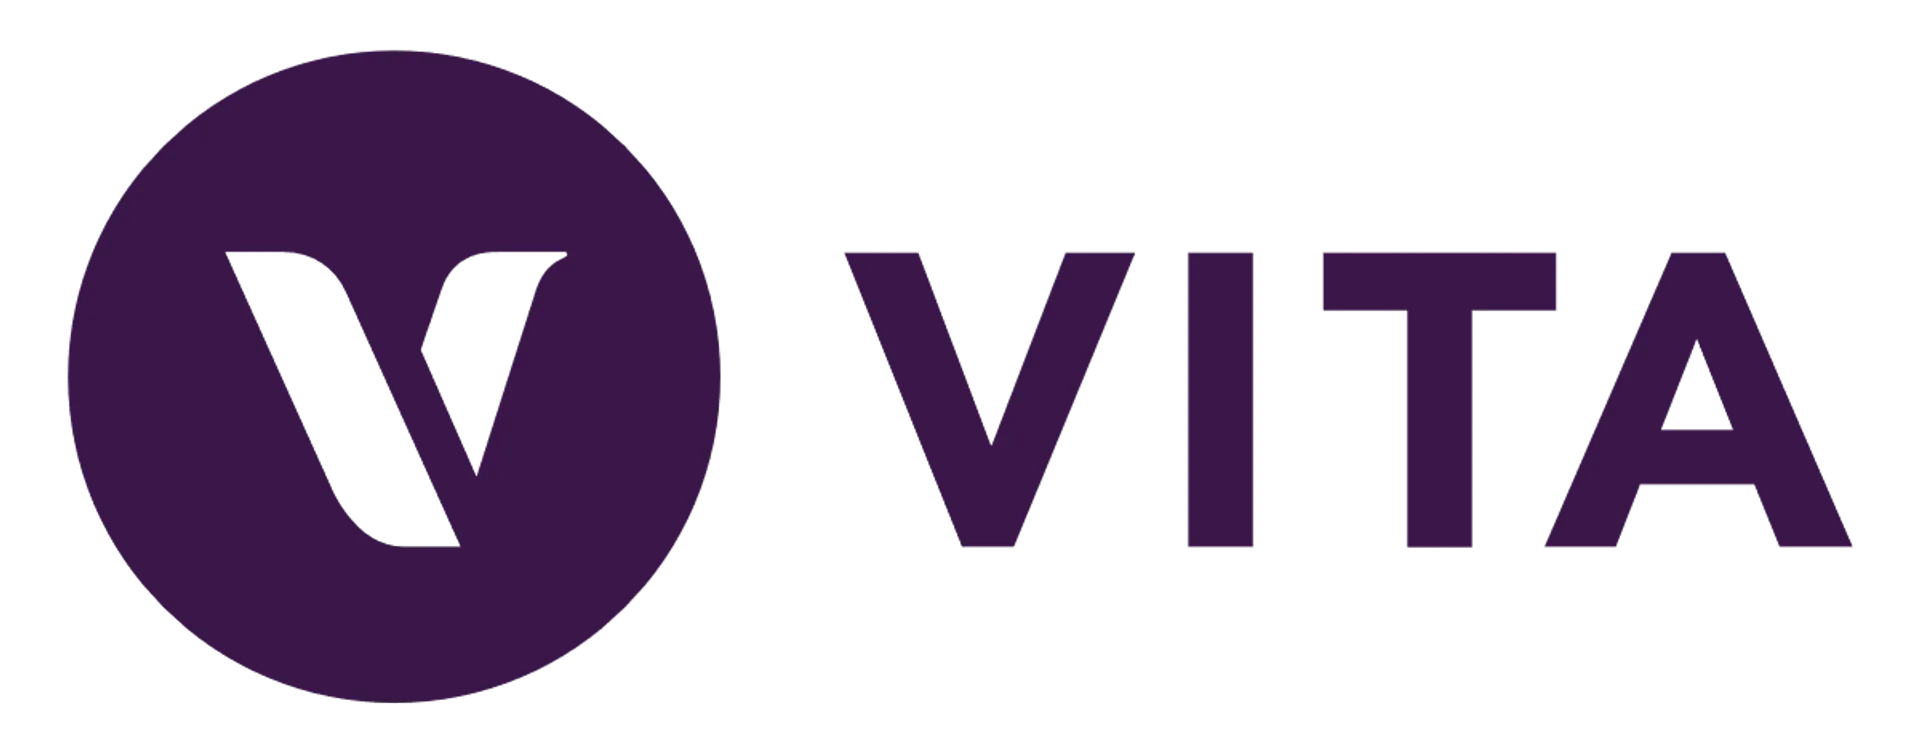 VITA logo